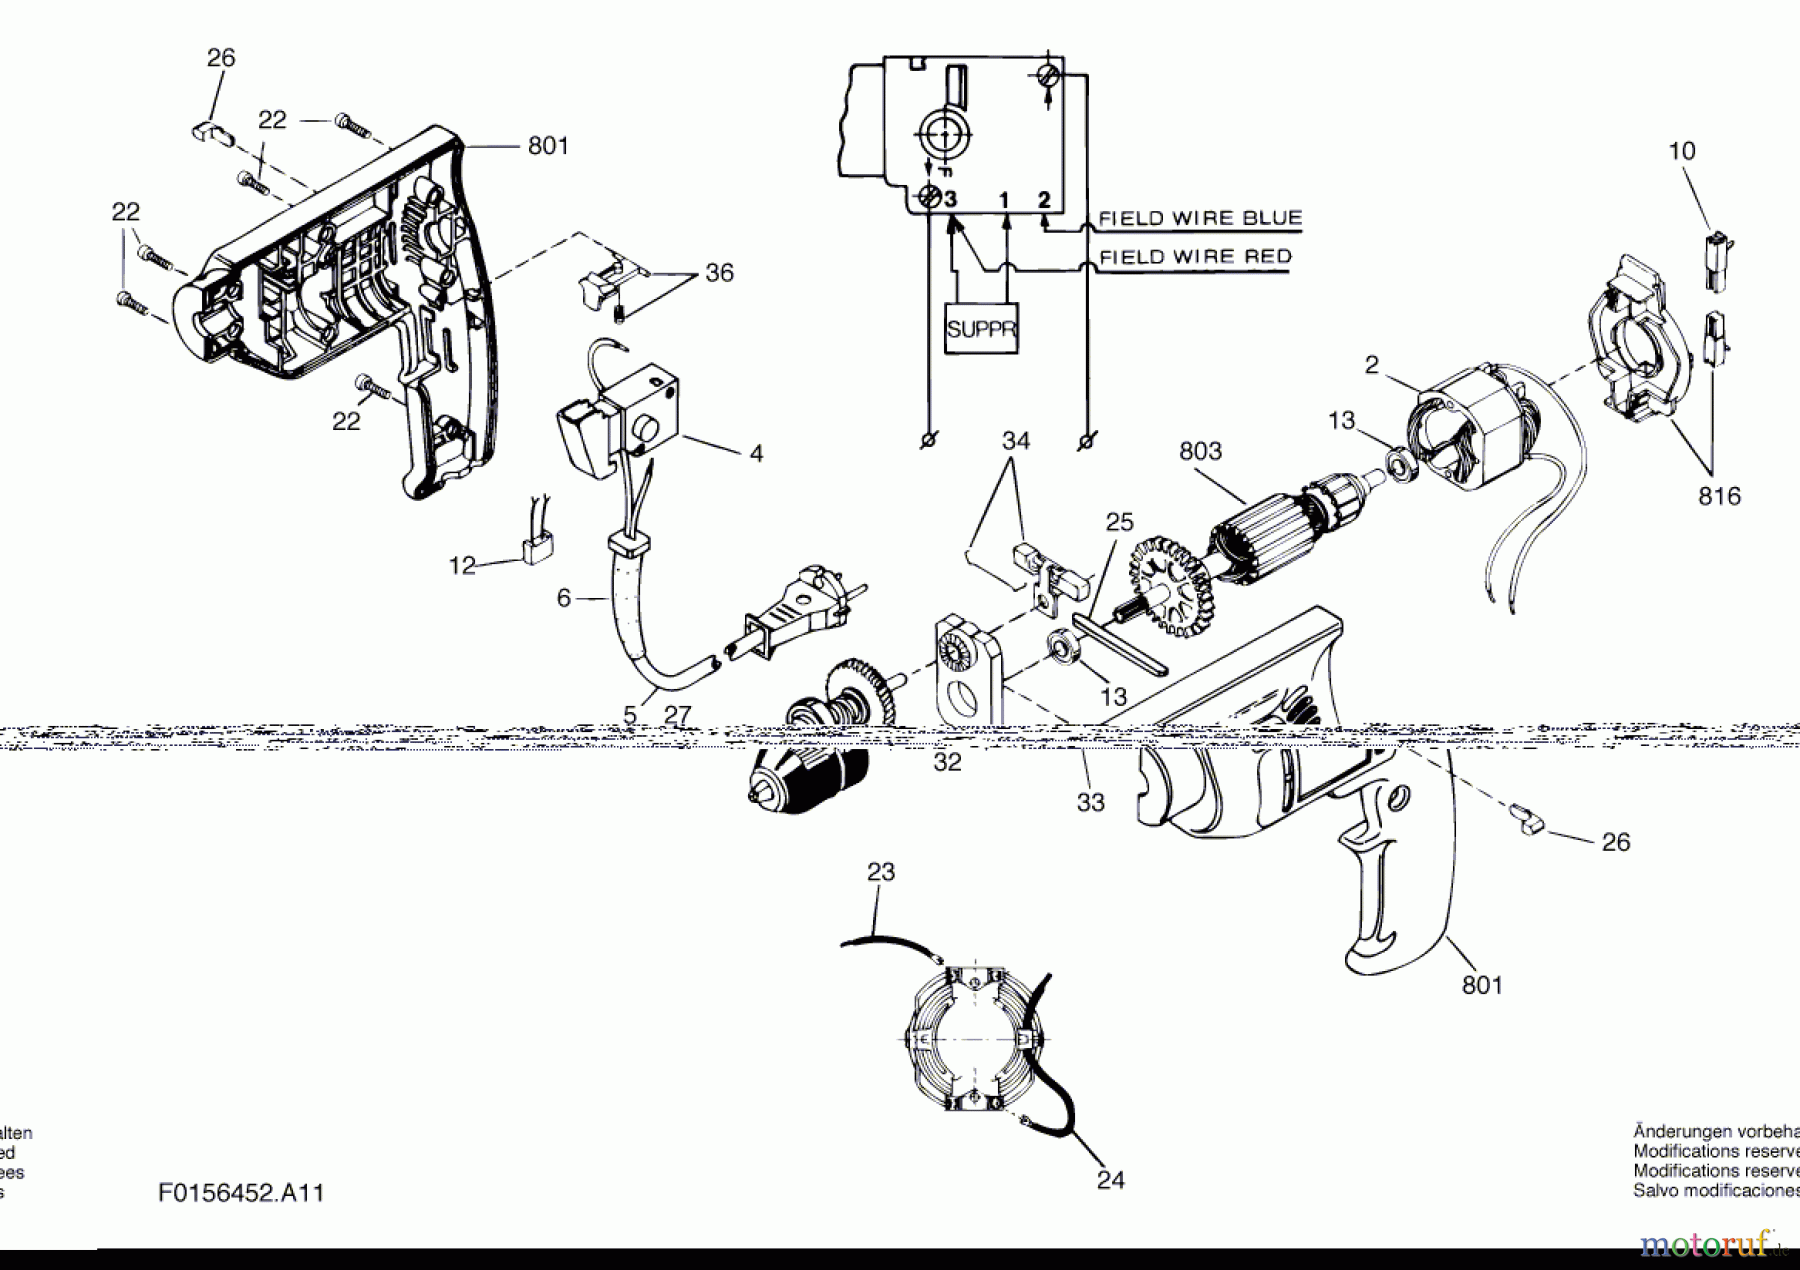  Bosch Werkzeug Schlagbohrmaschine 6452 H1 Seite 1